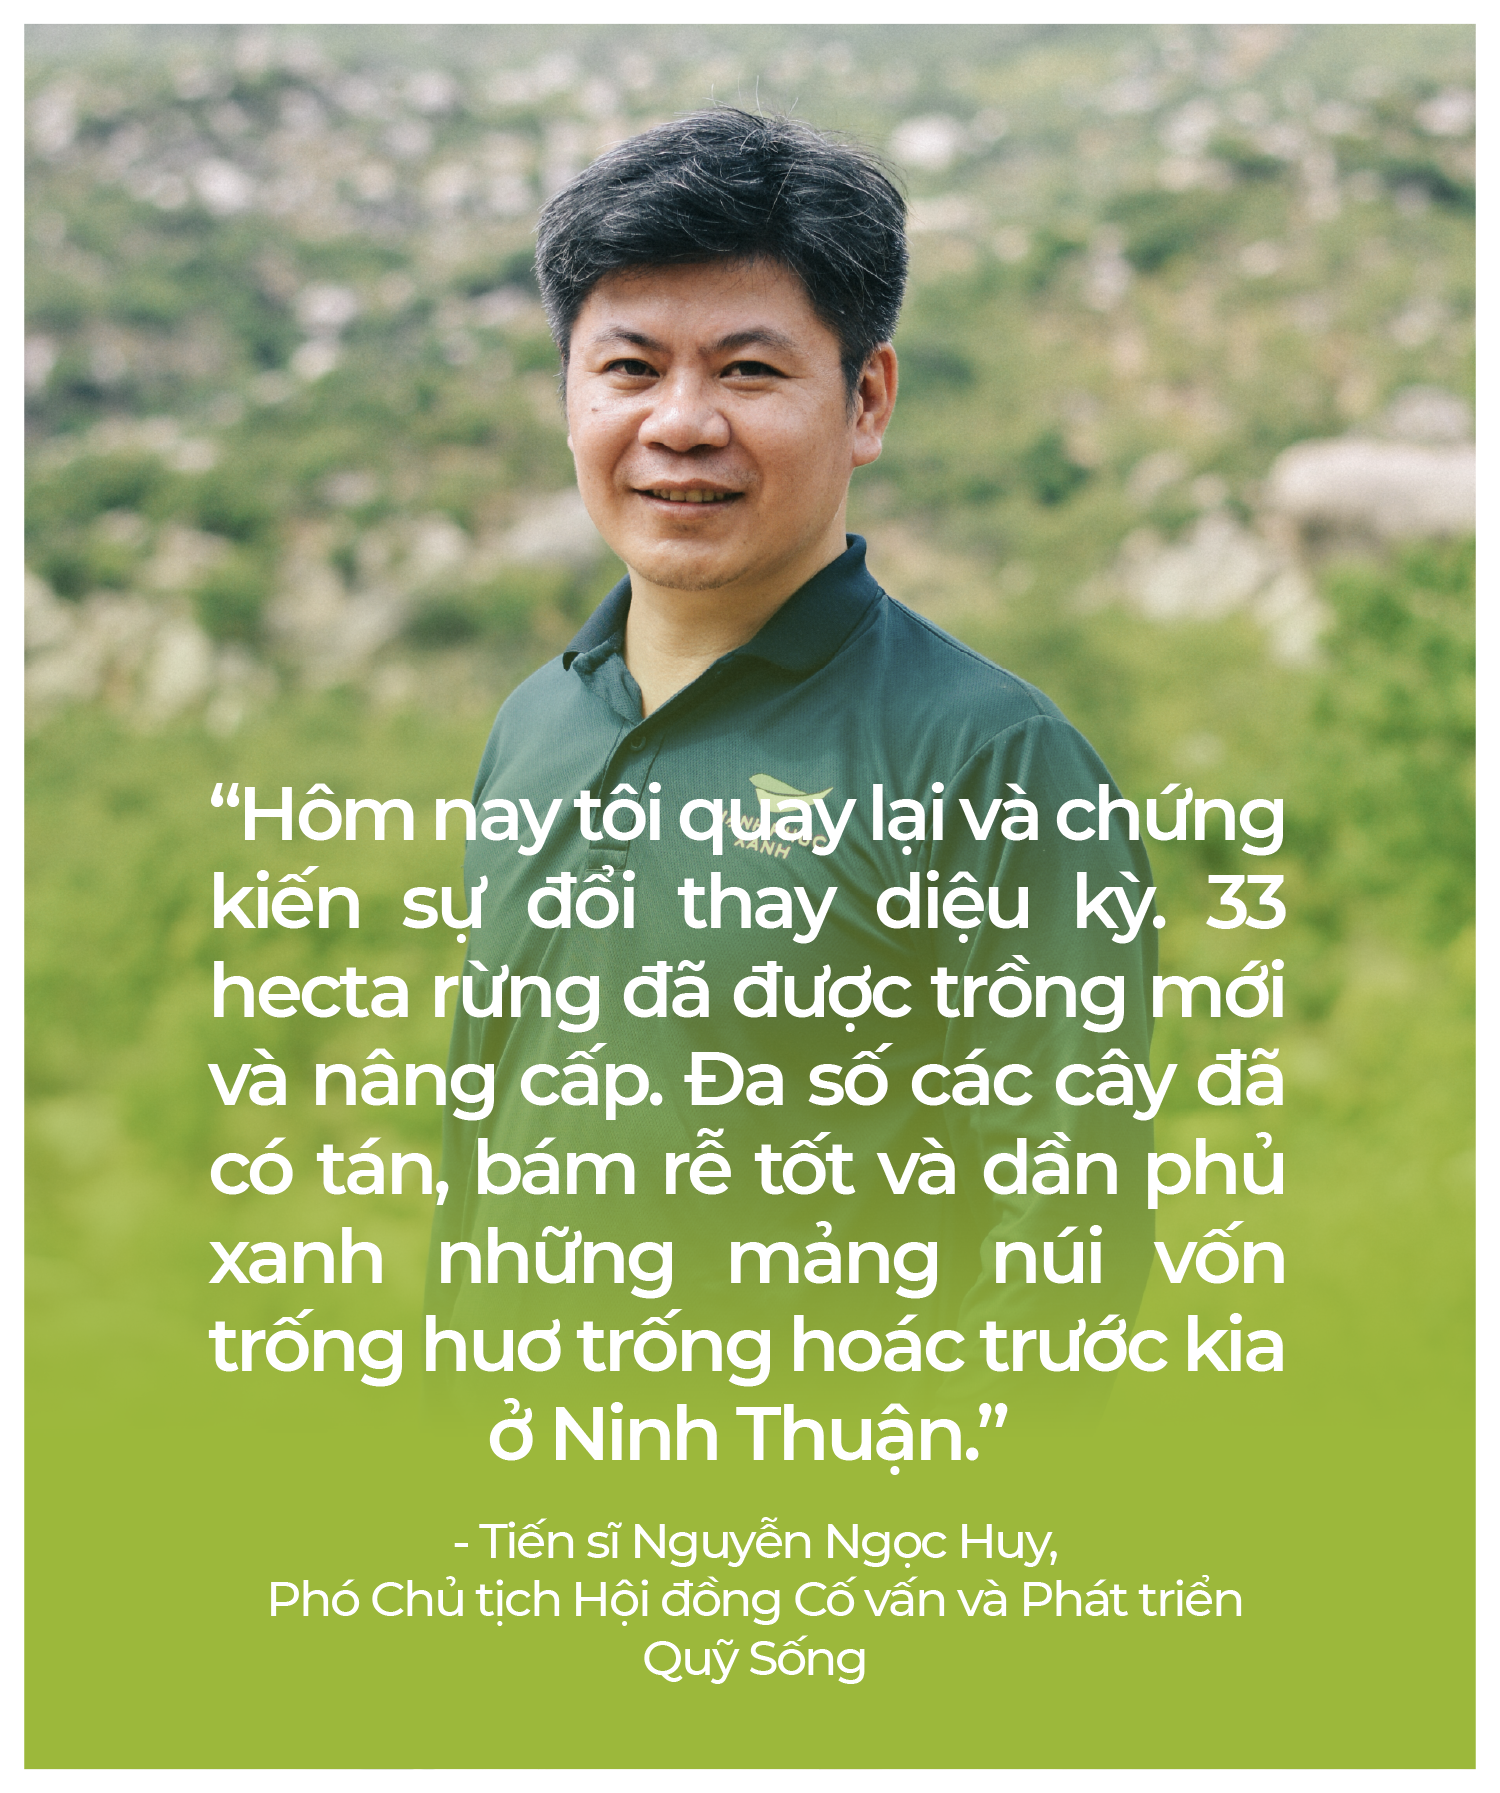 Tiến sĩ Nguyễn Ngọc Huy, Phó Chủ tịch Hội đồng Cố vấn và Phát triển